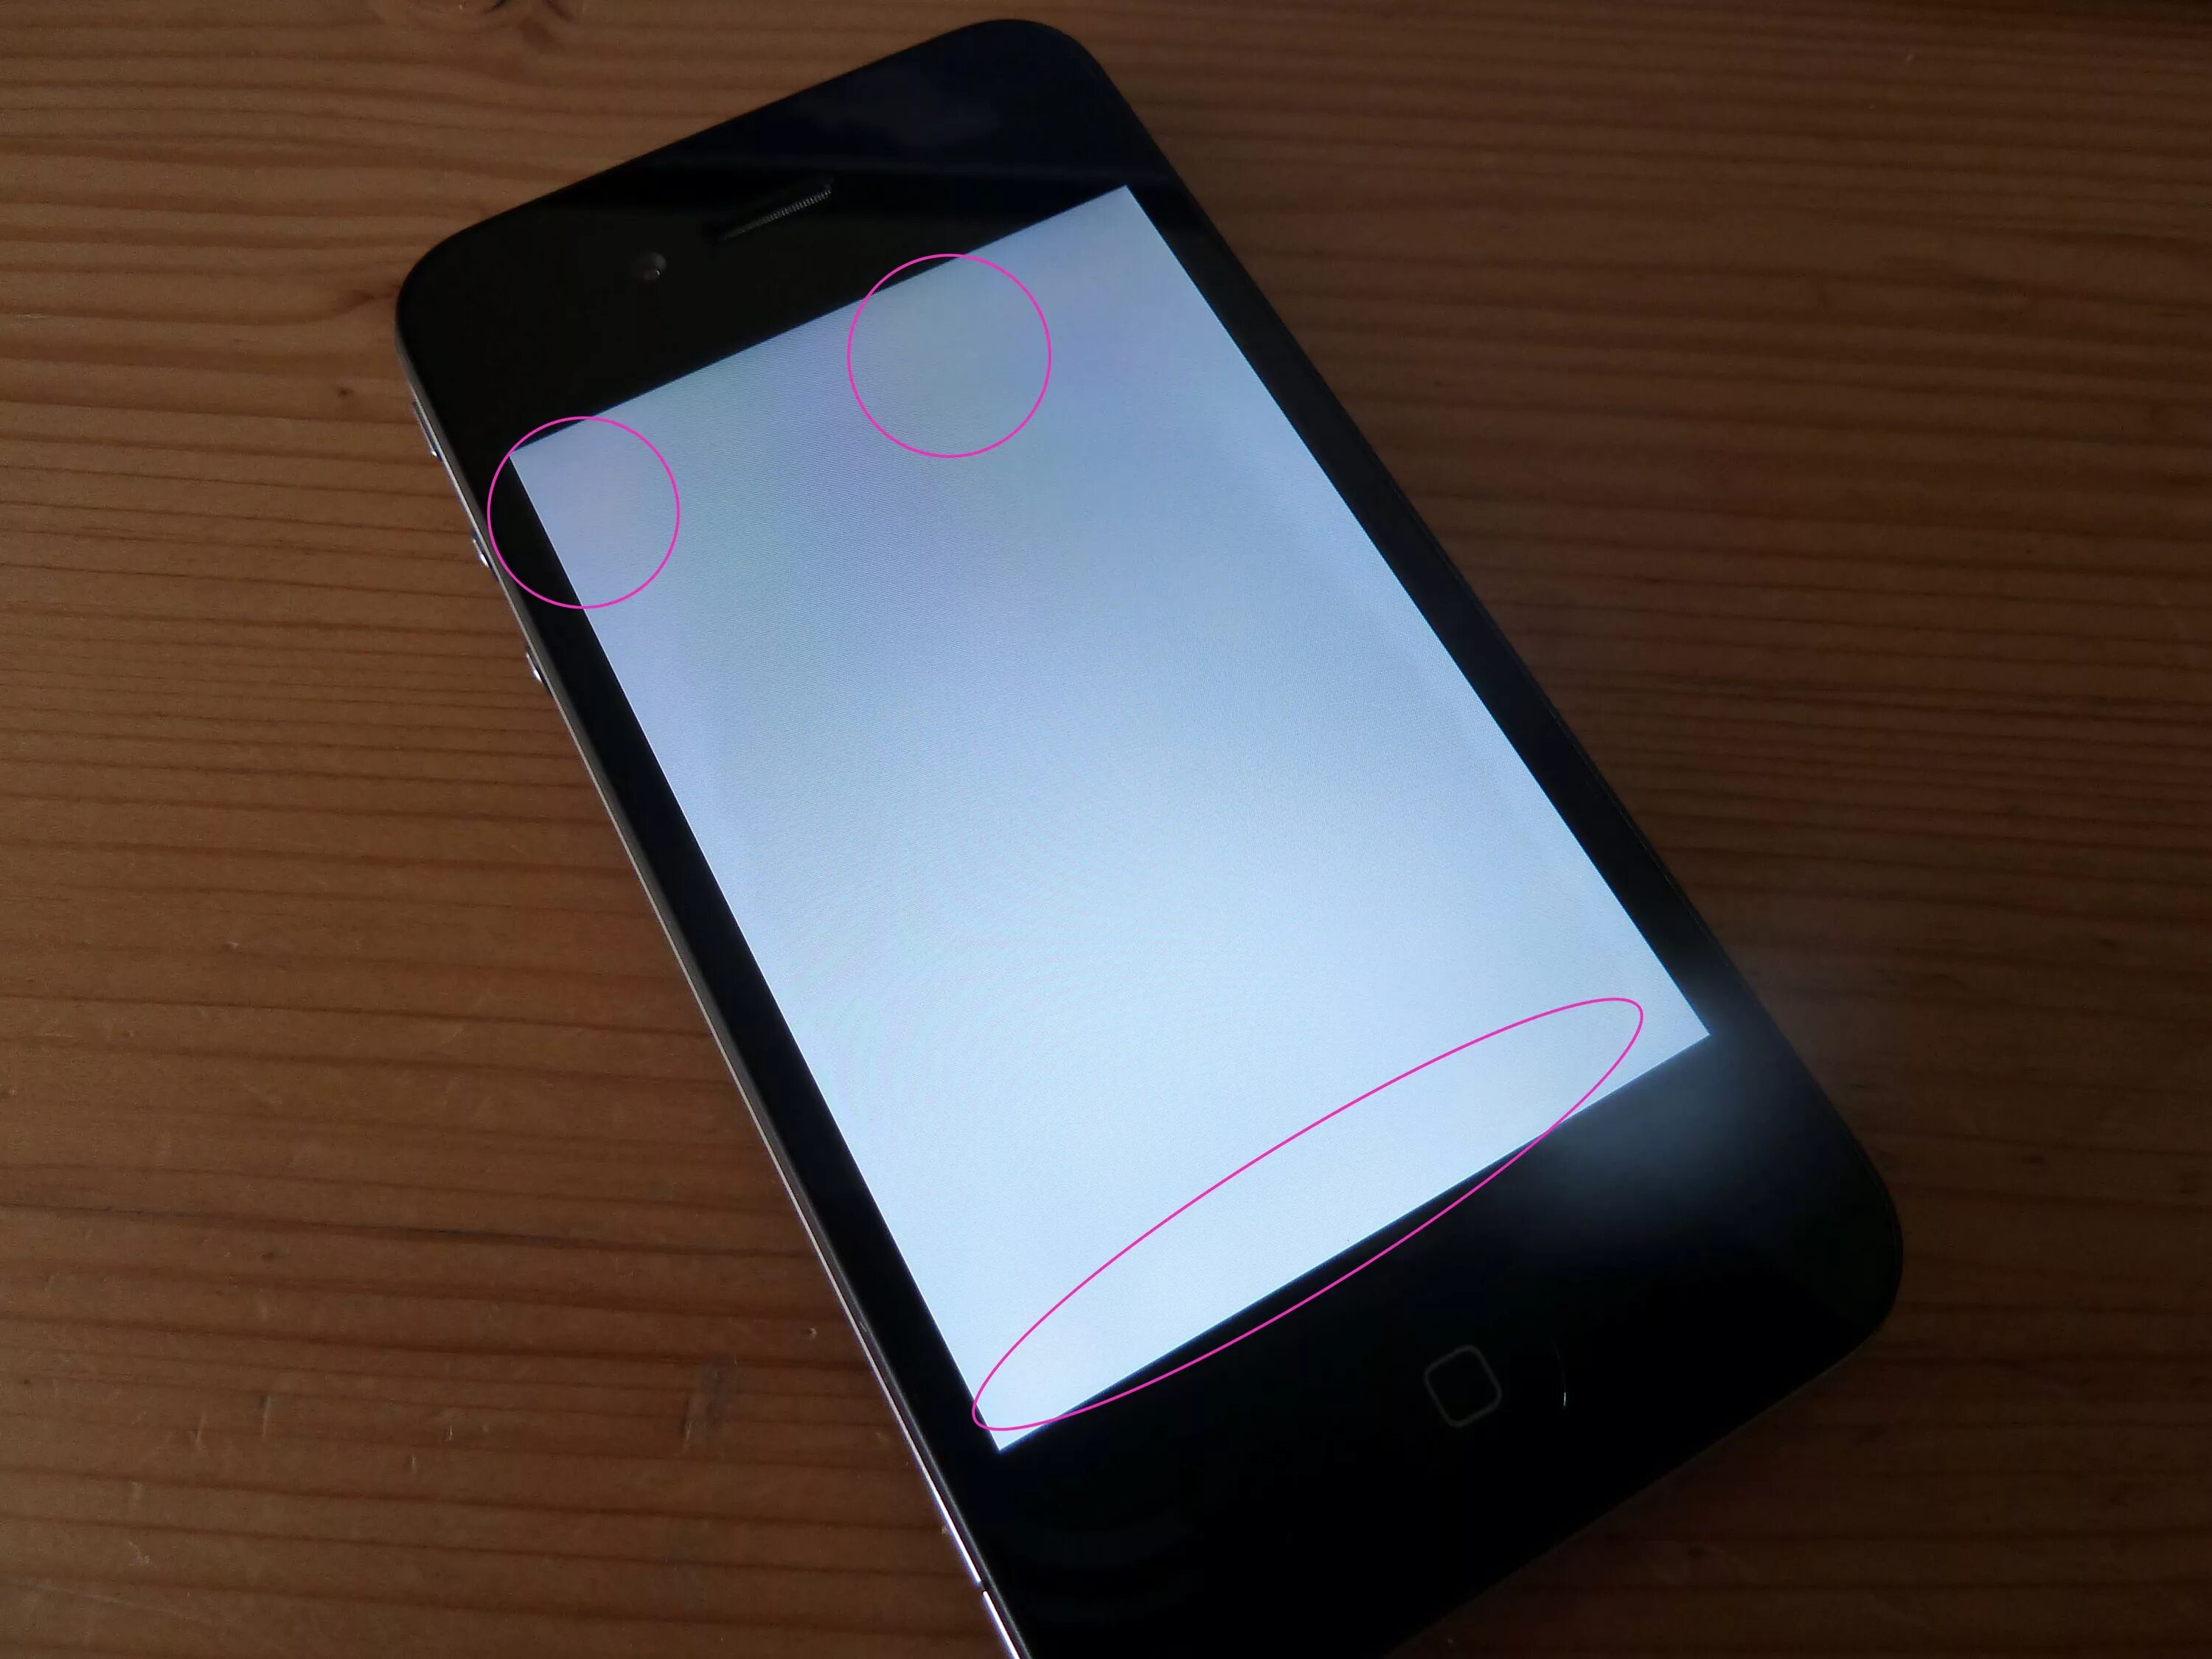 Появились точки на экране телефона. Пятно на экране айфона. На экране айфона появились пятна. Темная полоса на экране айфона. Пятна на экране айфон 7.